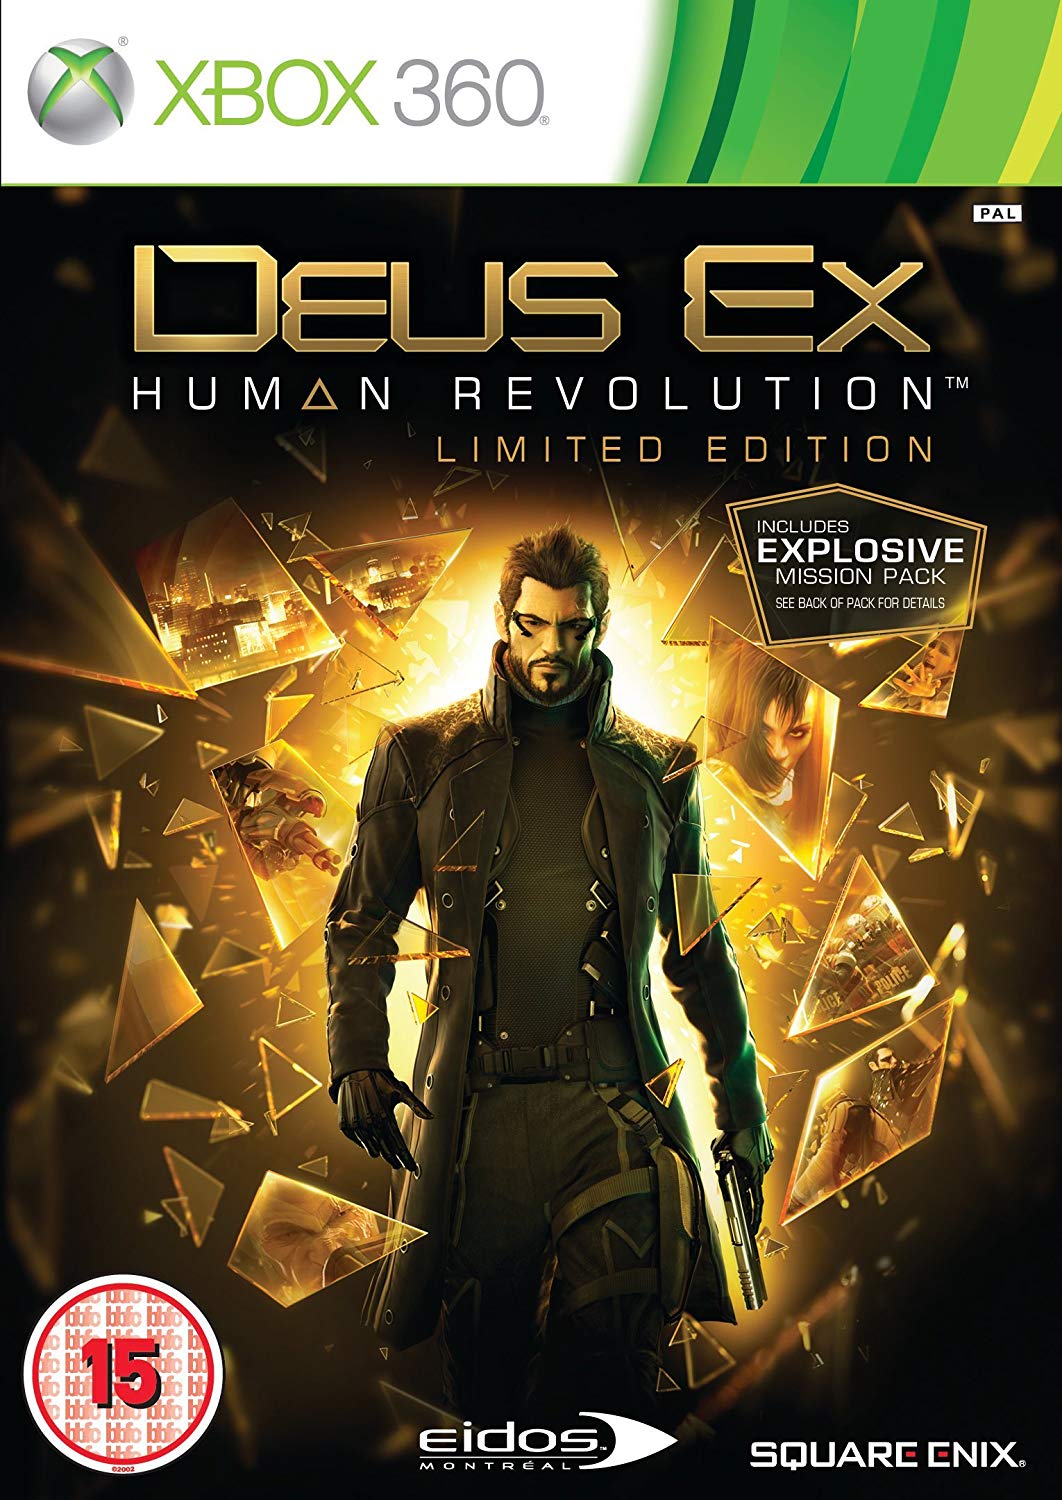 Deus Ex Human Revolution Limited Edition (német doboz, artbook nélkül) - Xbox 360 Játékok